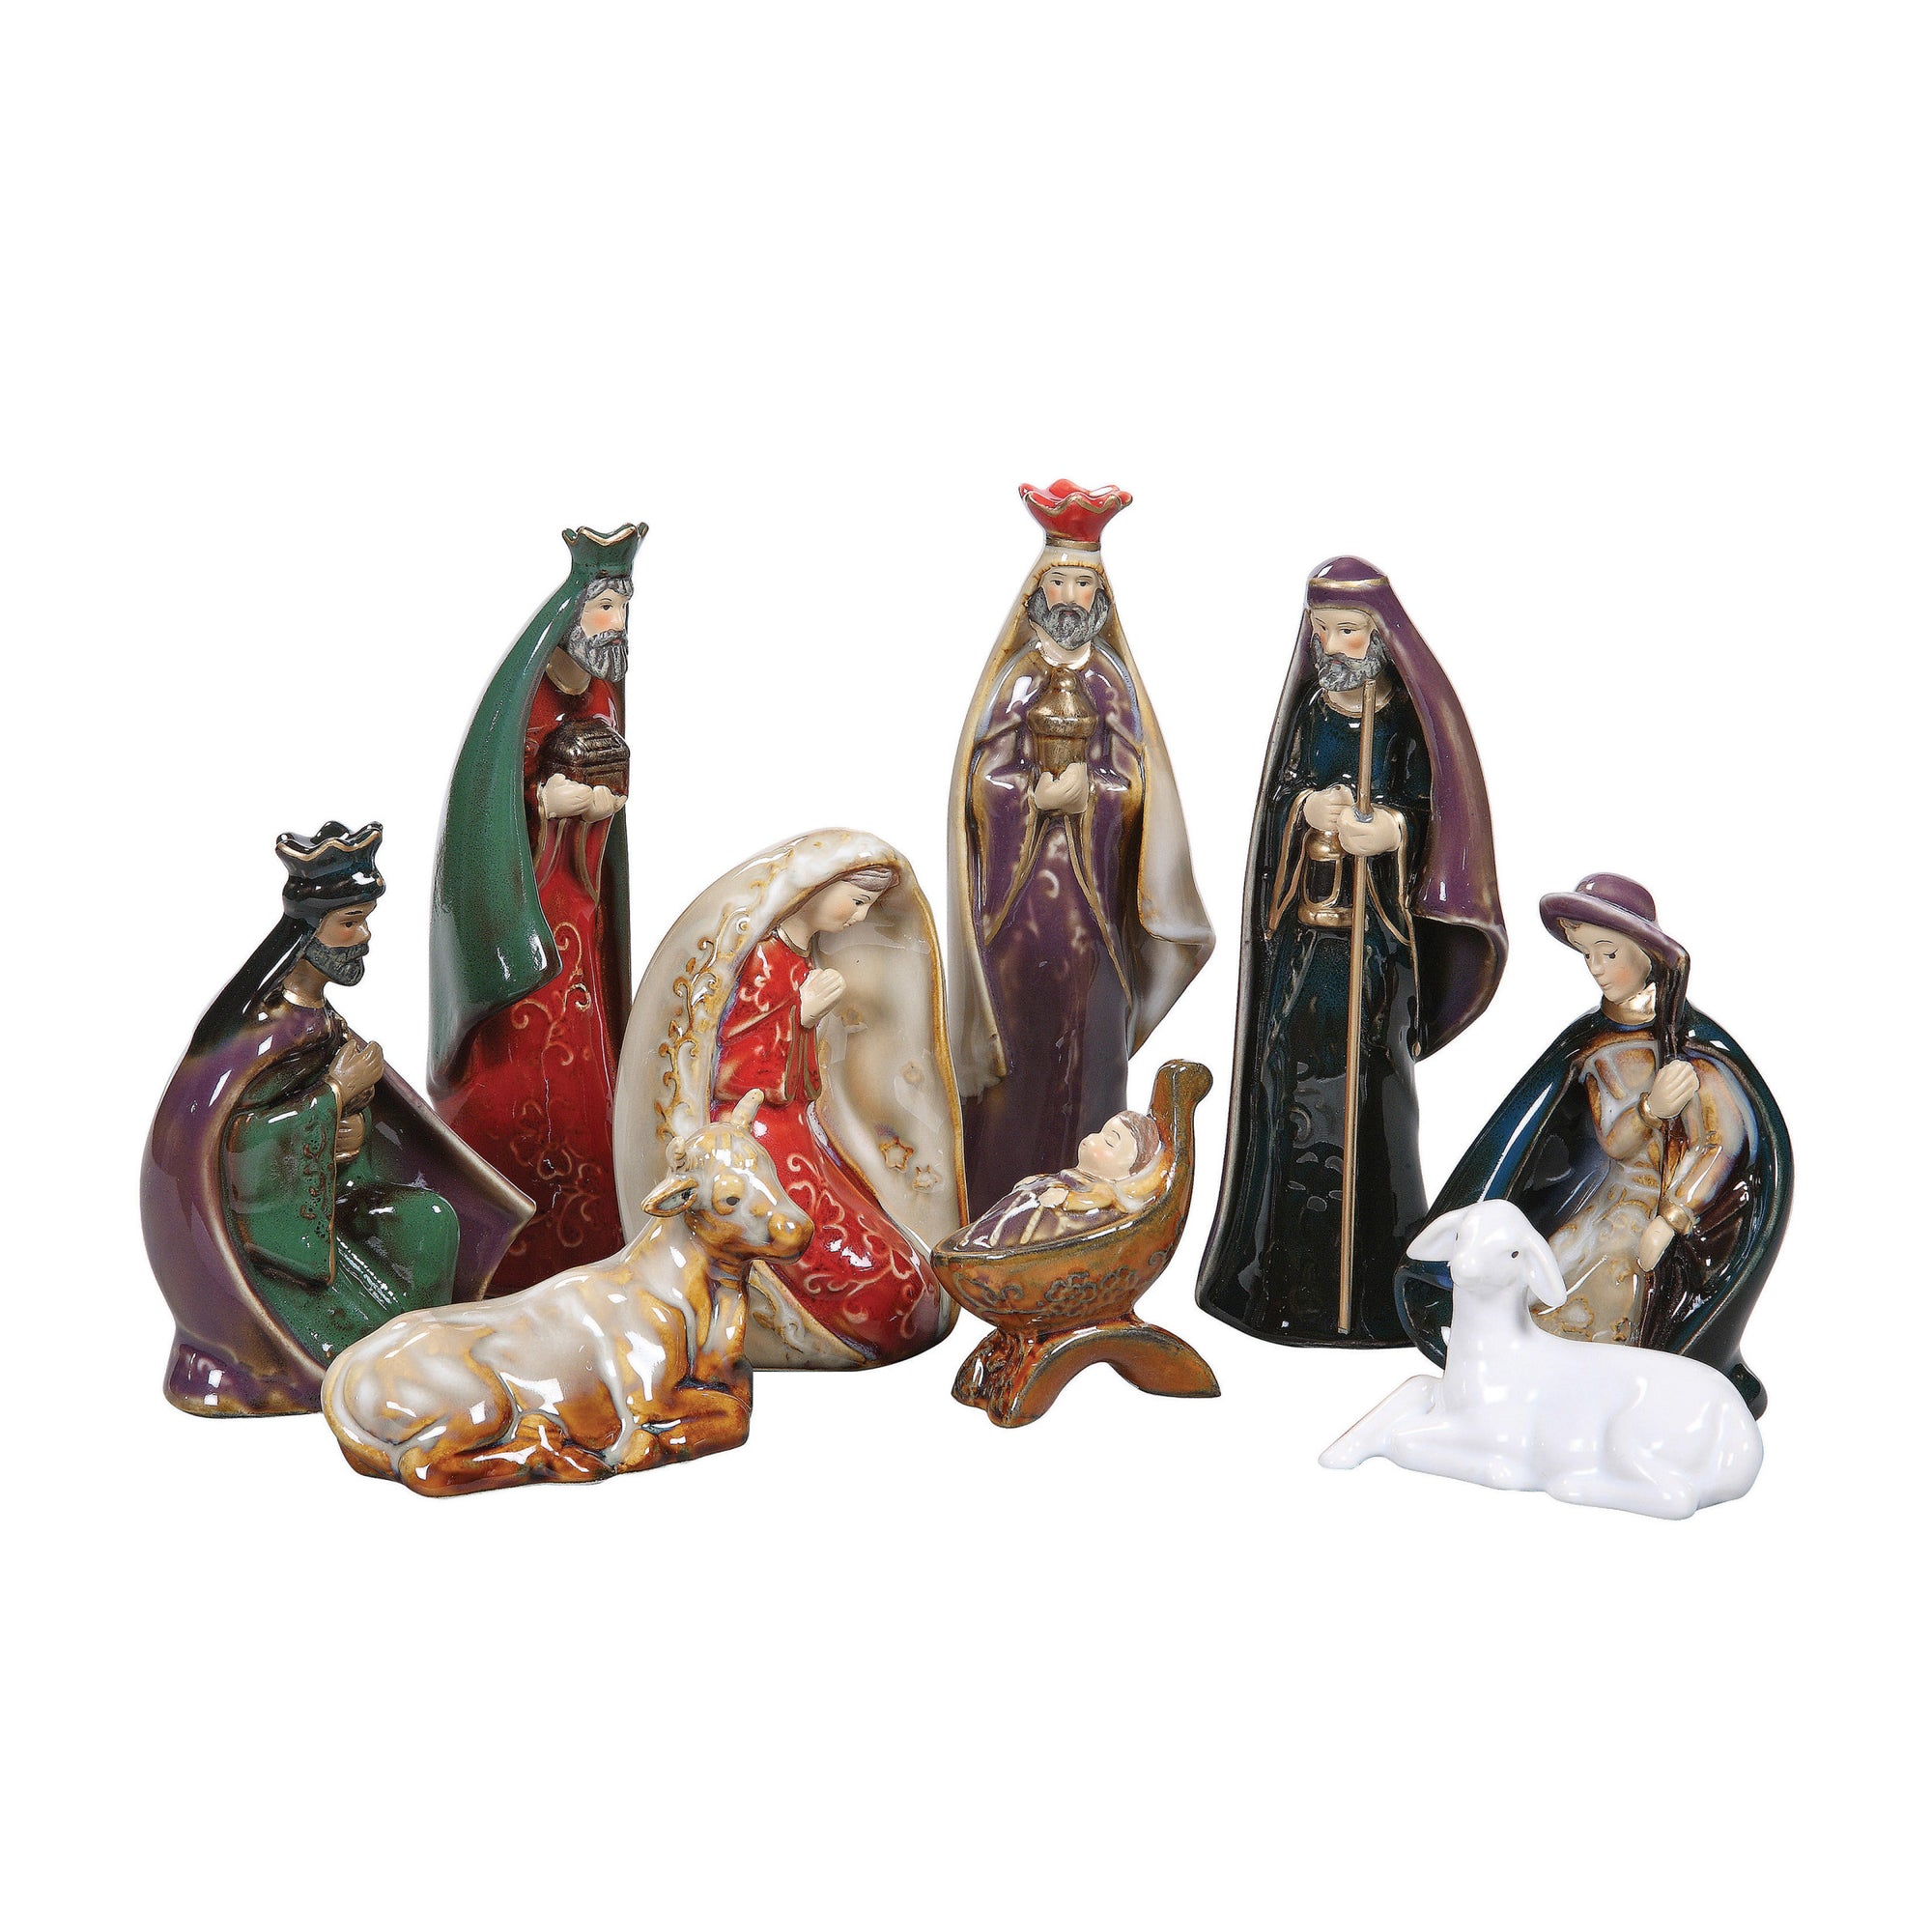 S/9 6"H Ceramic Nativity Scene